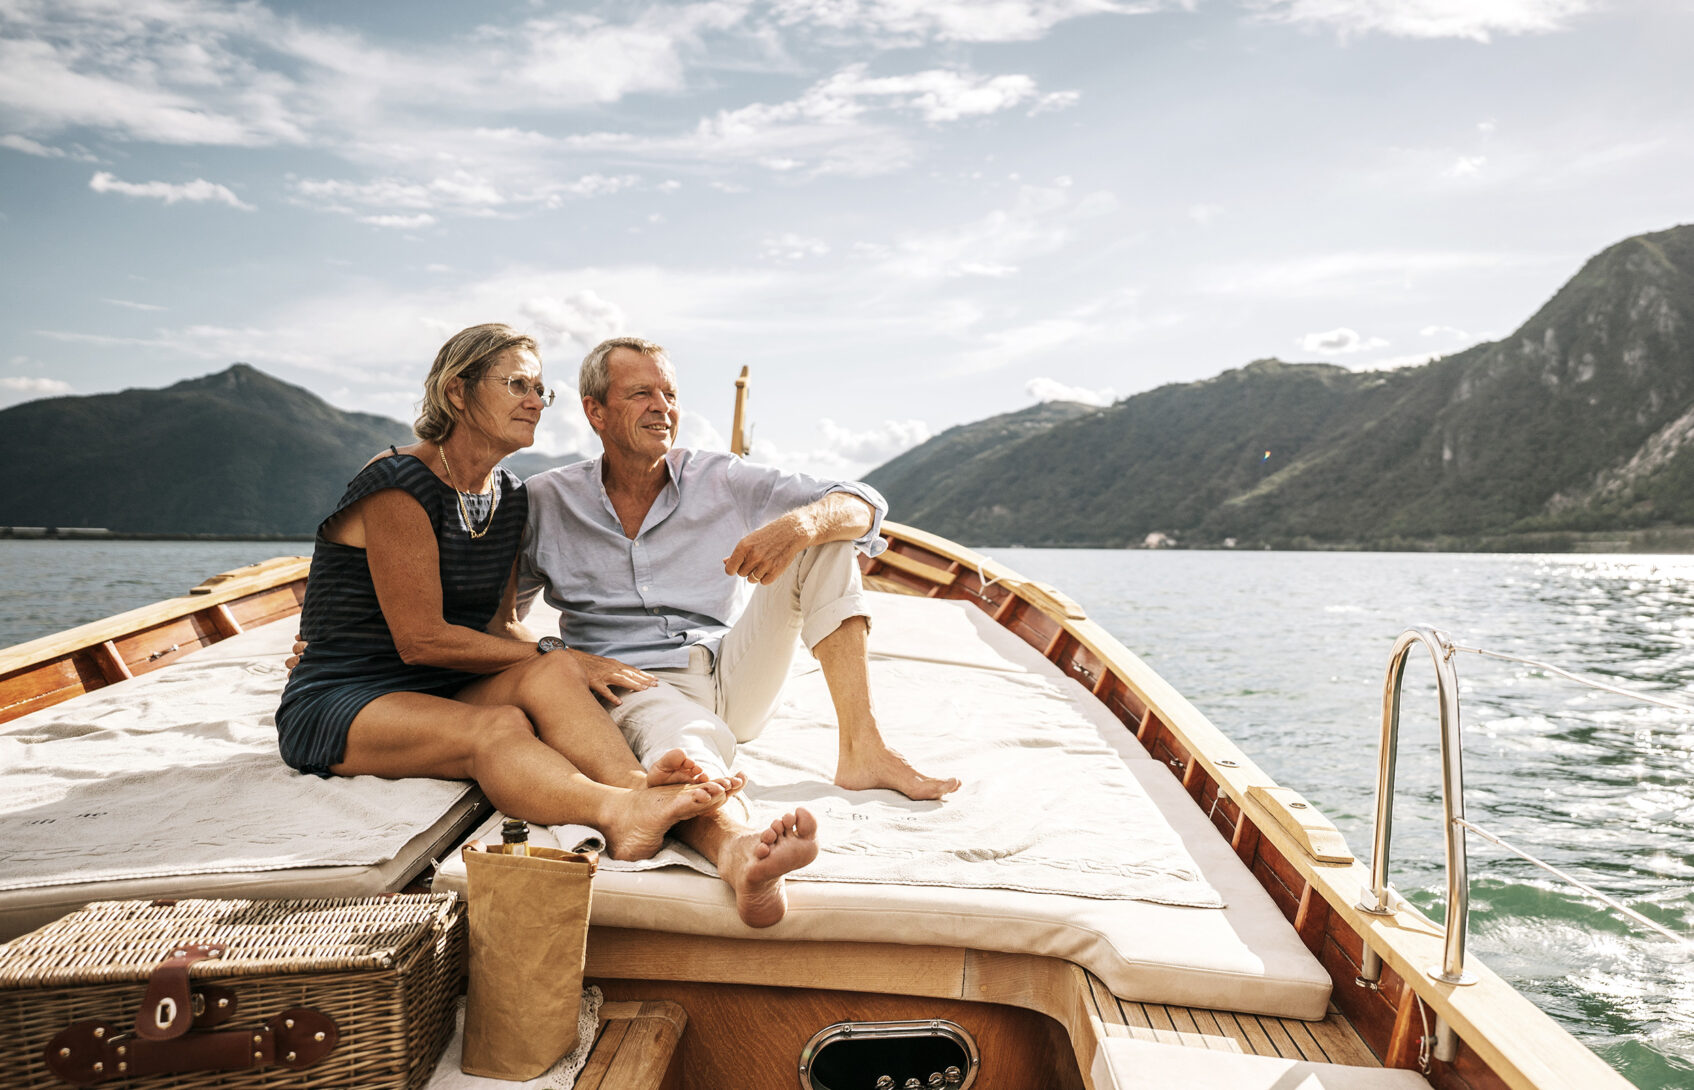 Senior couple seated on a yacht